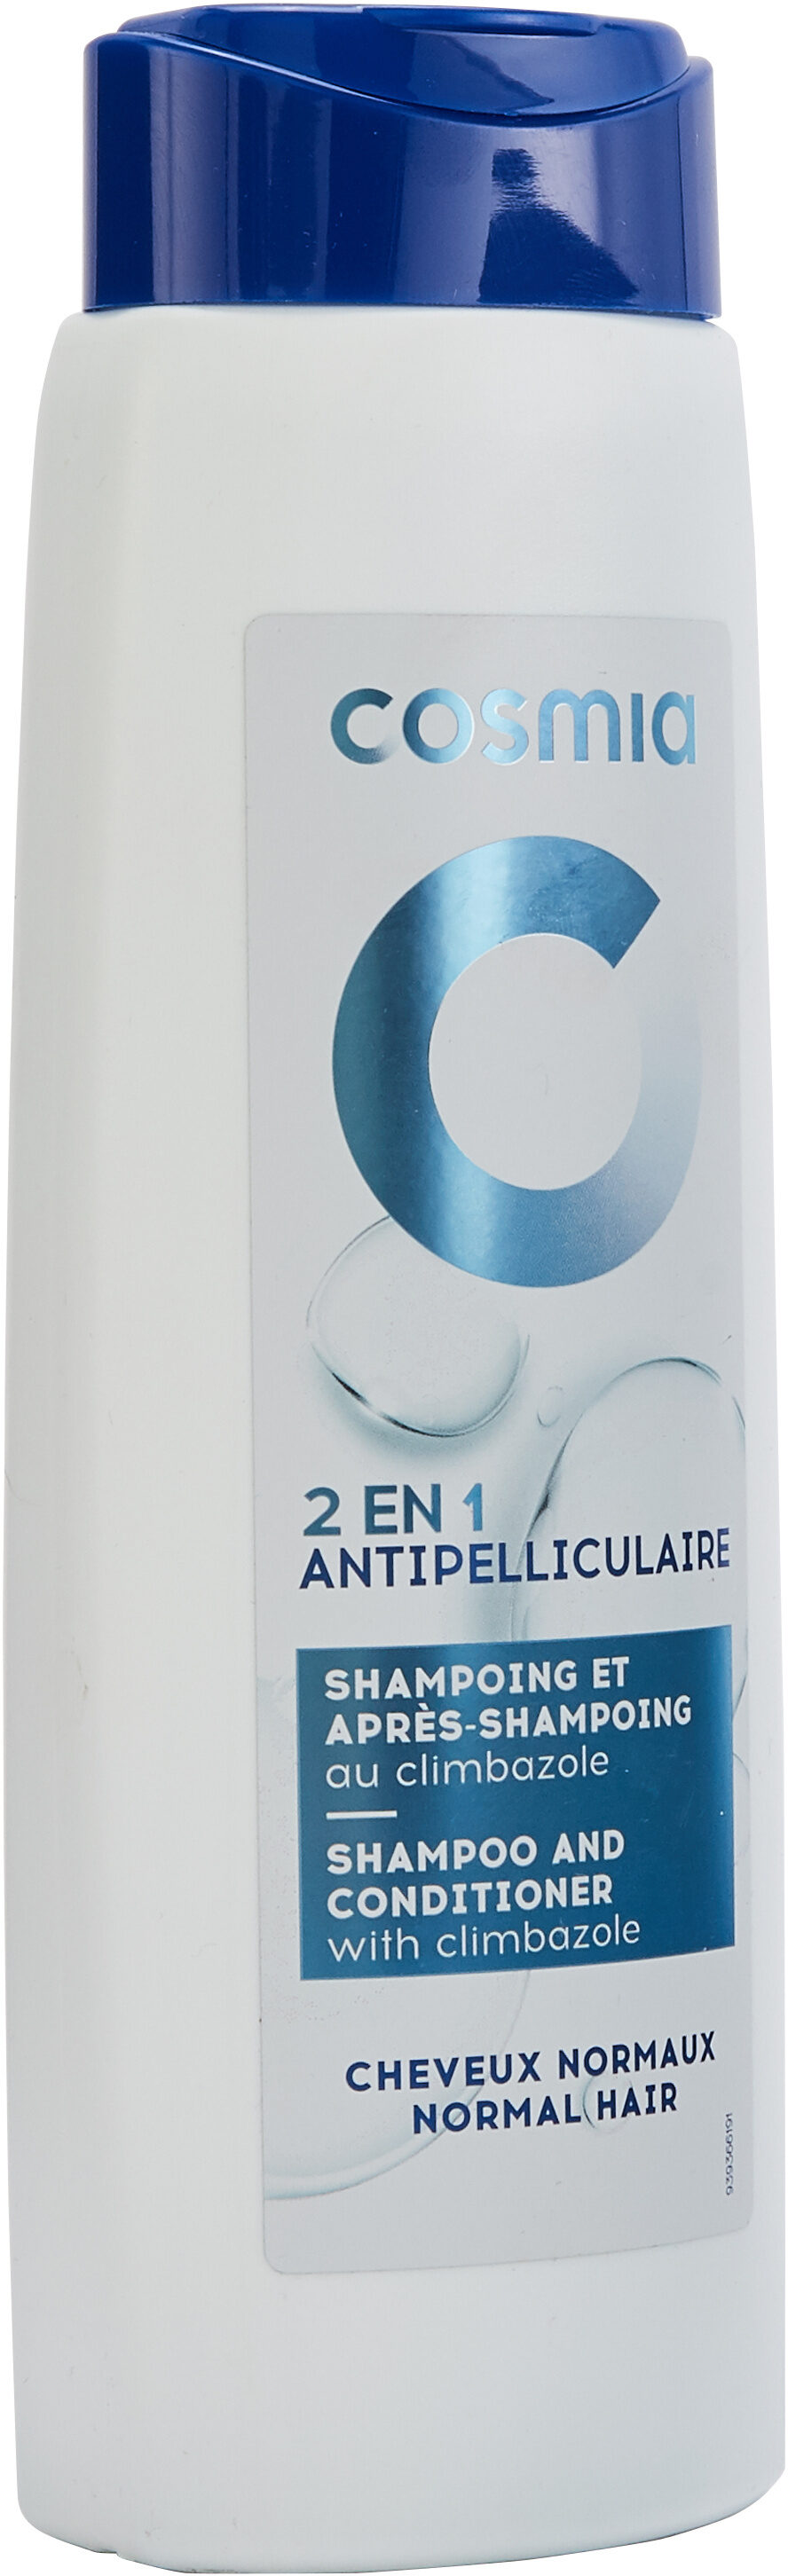 Shampoing et après-shampoing antipelliculaire 2 en 1 - Product - en